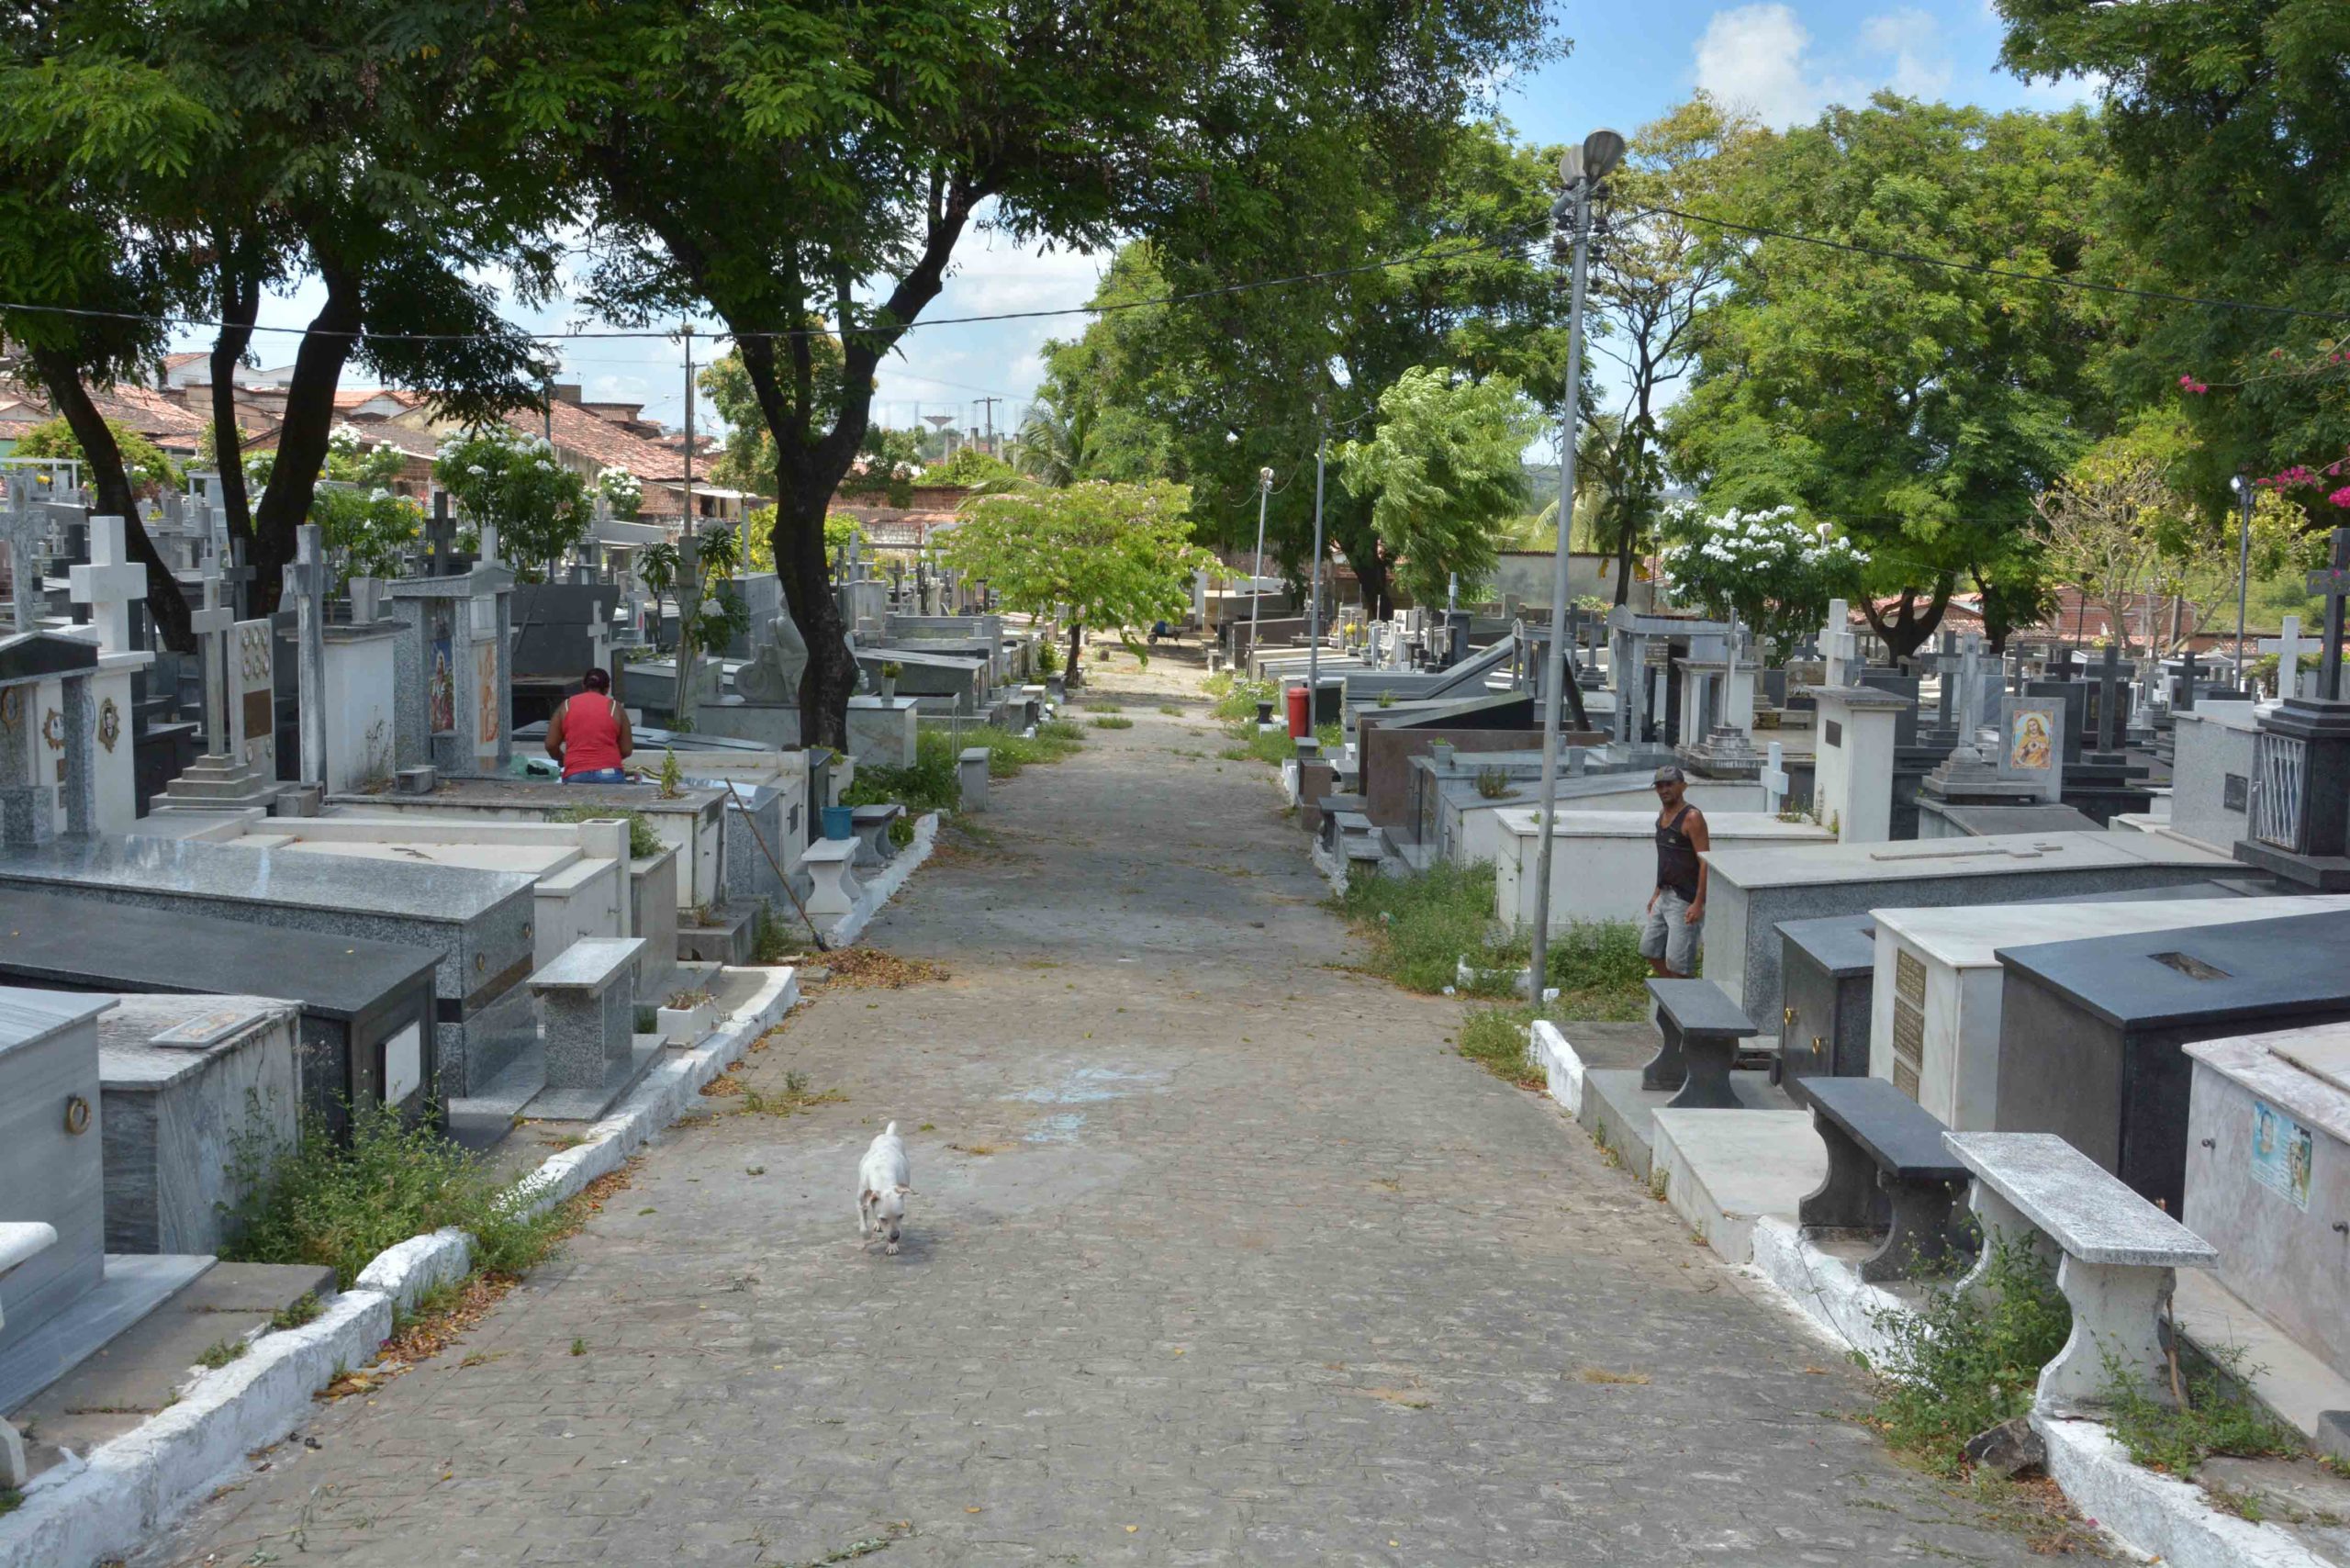 Prefeitura de João Pessoa suspende velórios e determina que sepultamento deve acontecer imediatamente